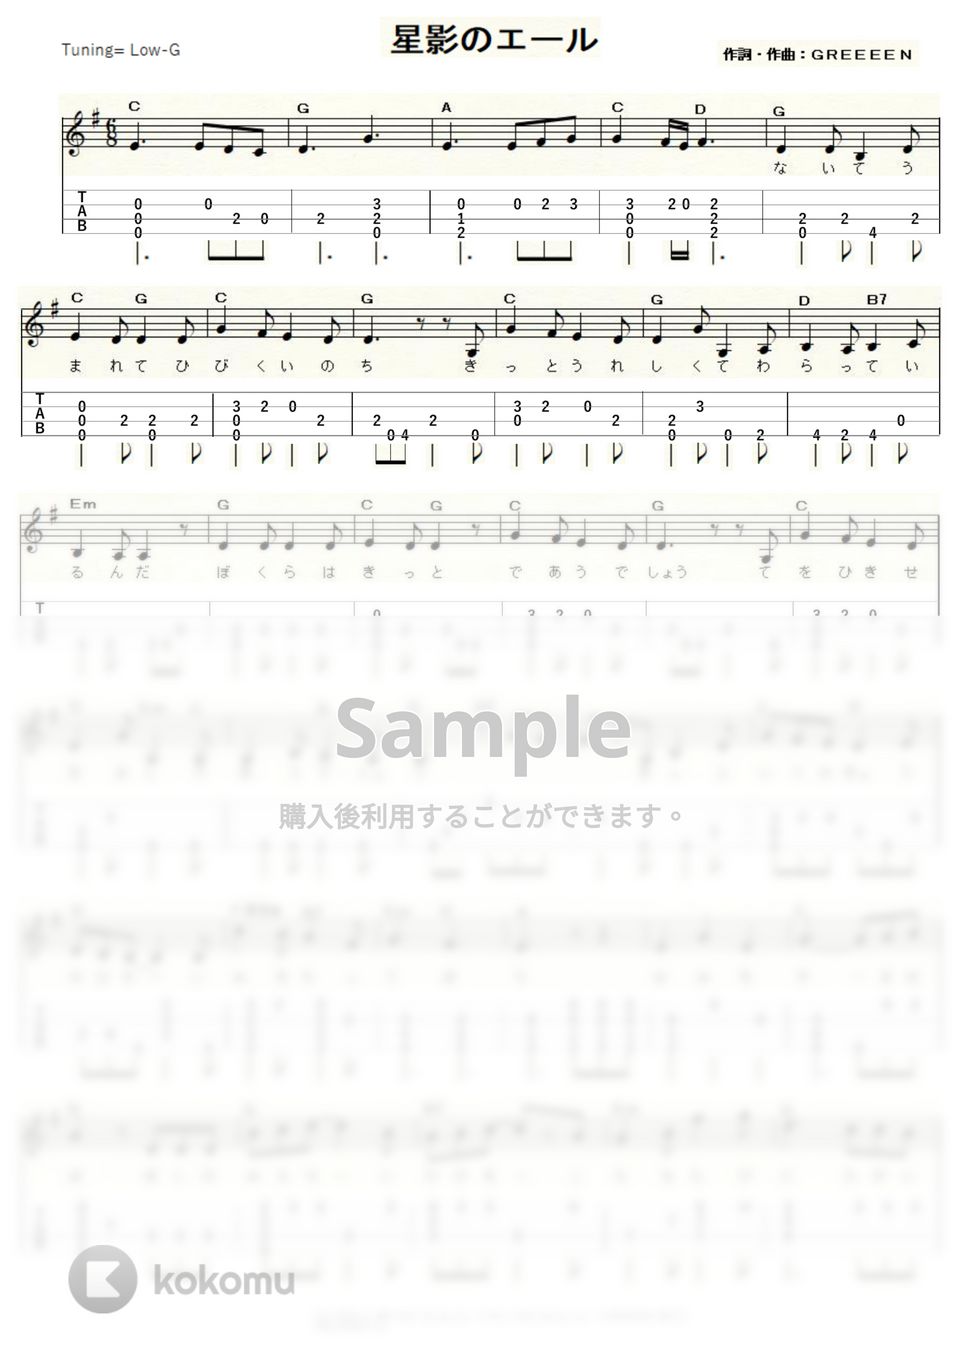 GReeeeN - 星影のエール (Low-G) by ukulelepapa